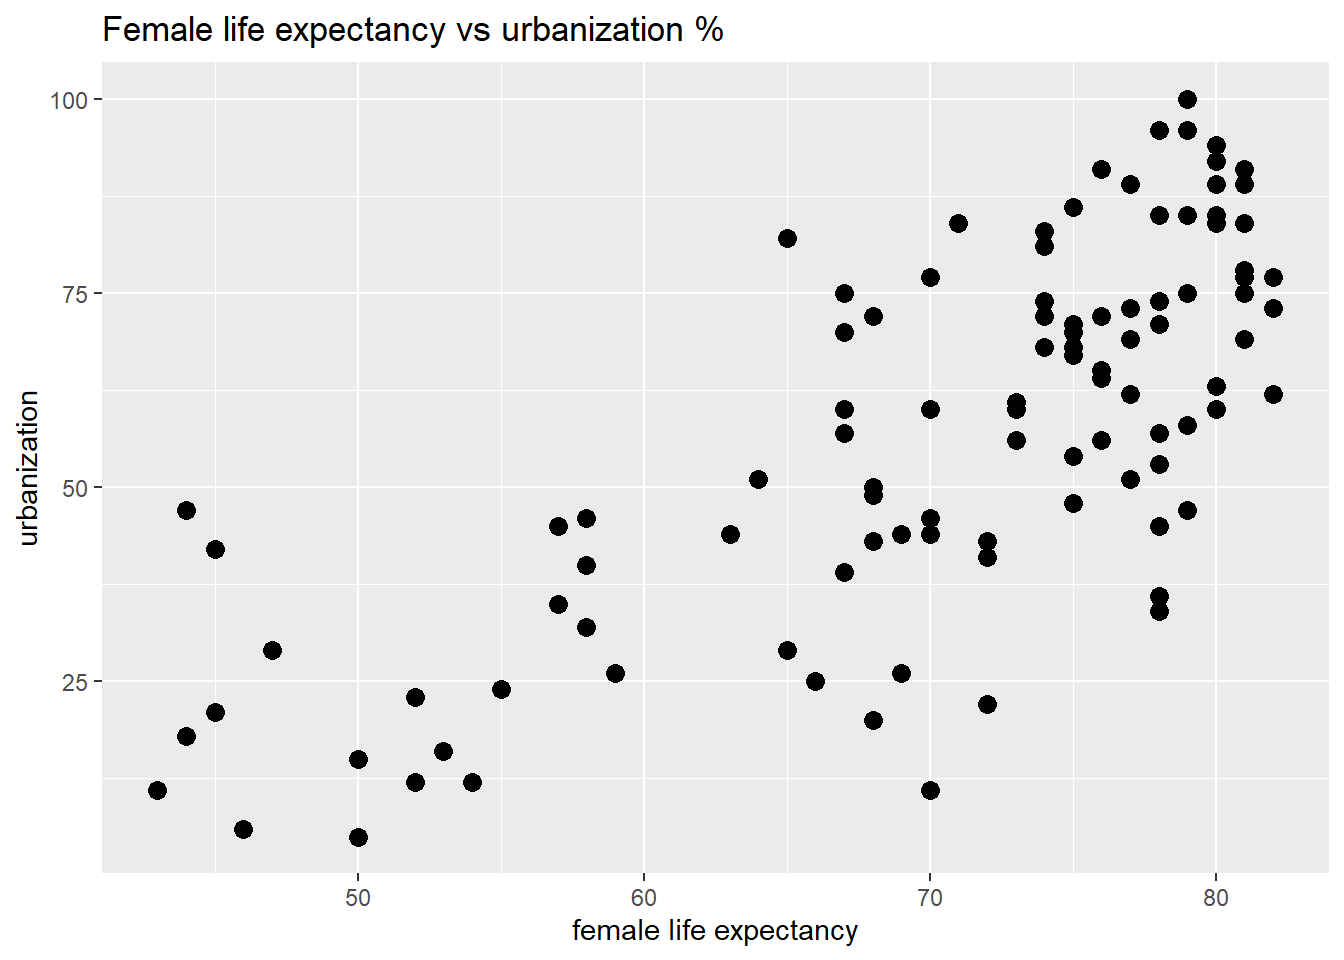 Urbanization and female life expectancy